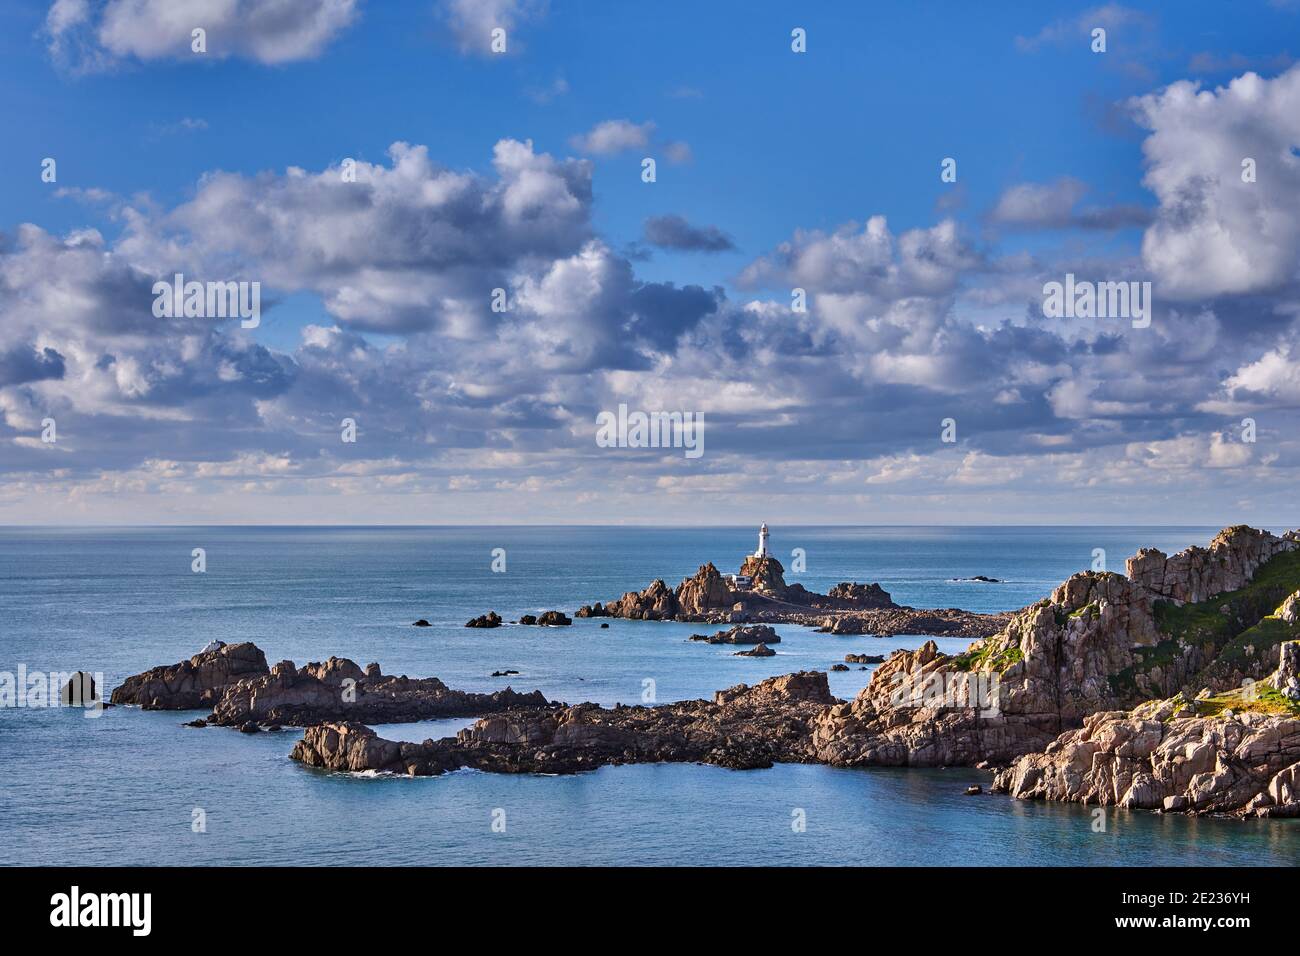 Imagen de Corbiere con acantilados y mar con un cielo nublado. Jersey, Islas del Canal Foto de stock